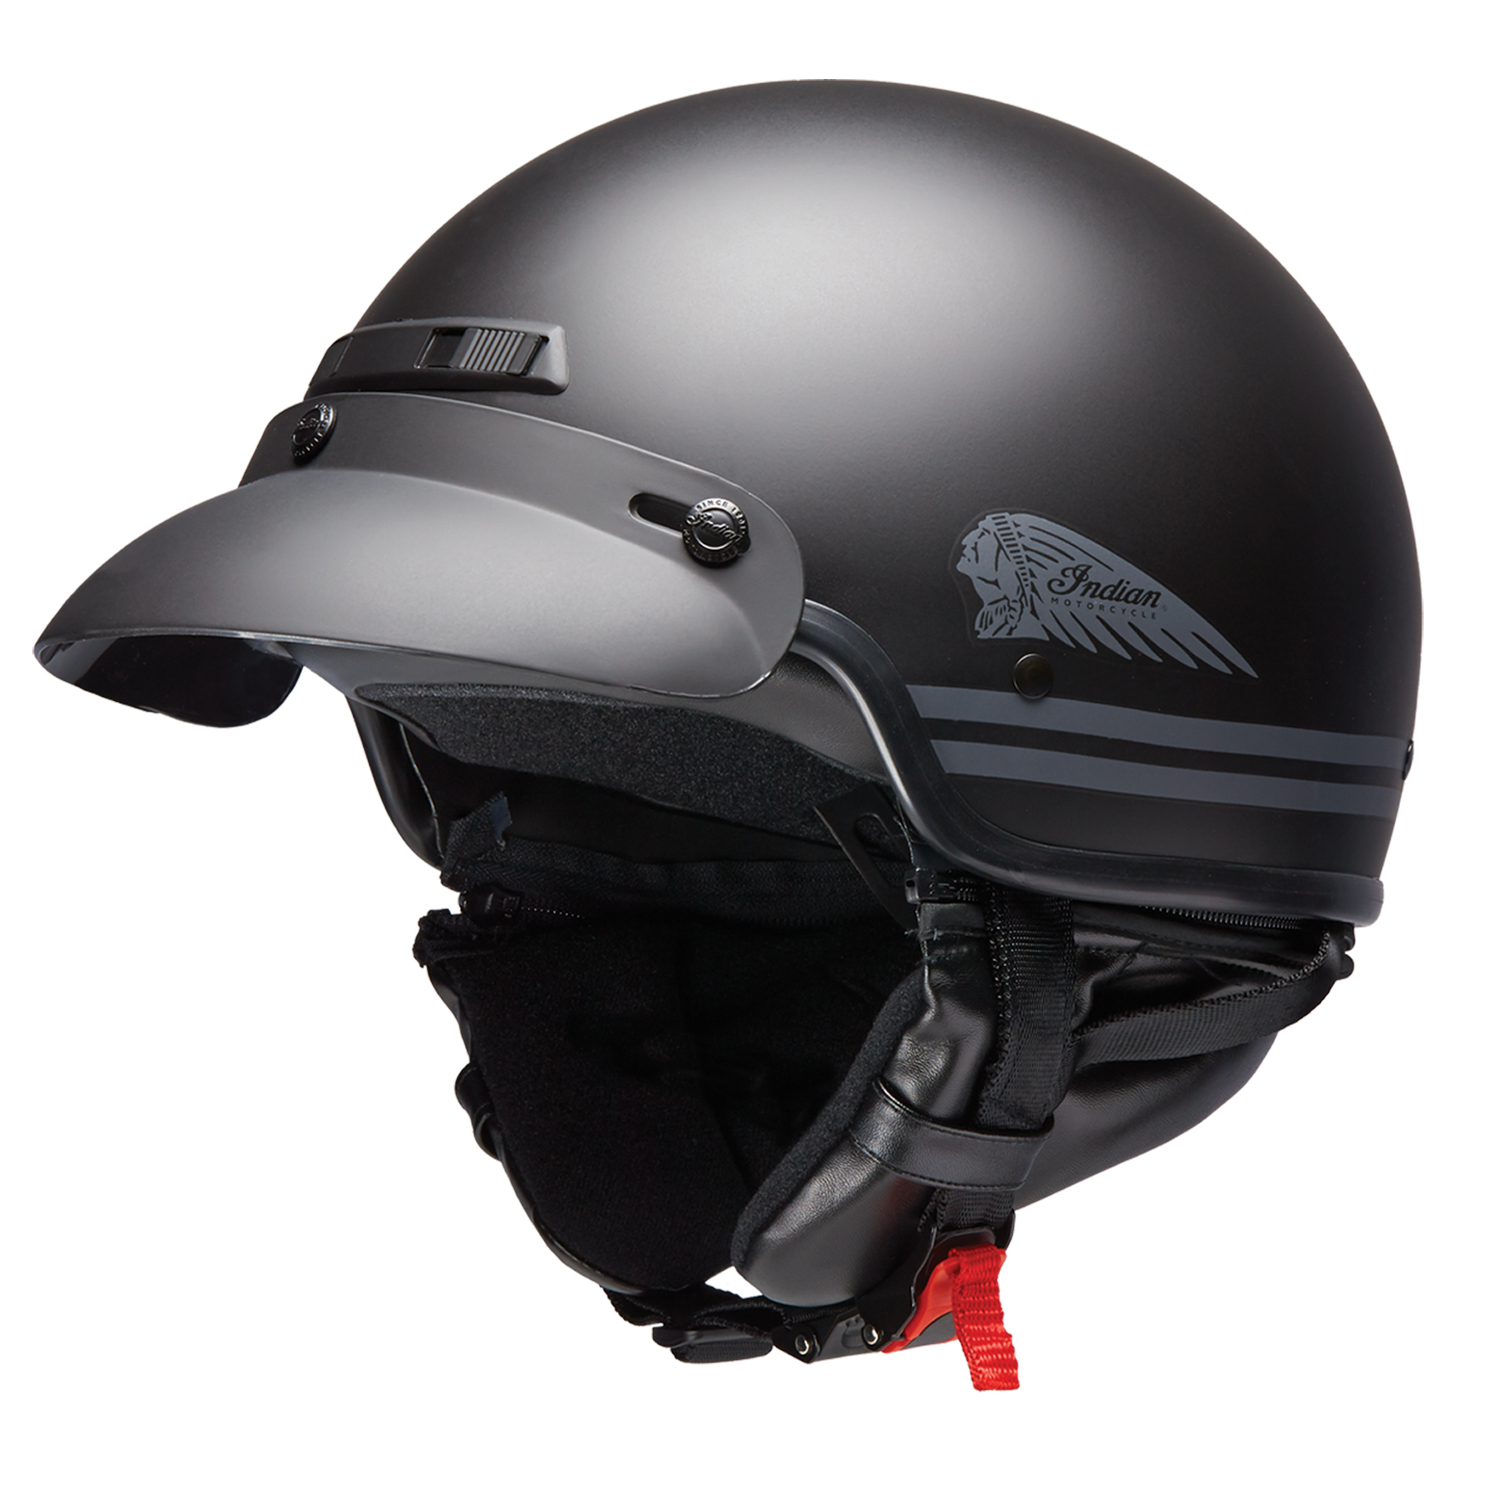 Indian Motorcycle Helmet : Indian Motorcycle® Full Face Helmet - Black | Indian - The